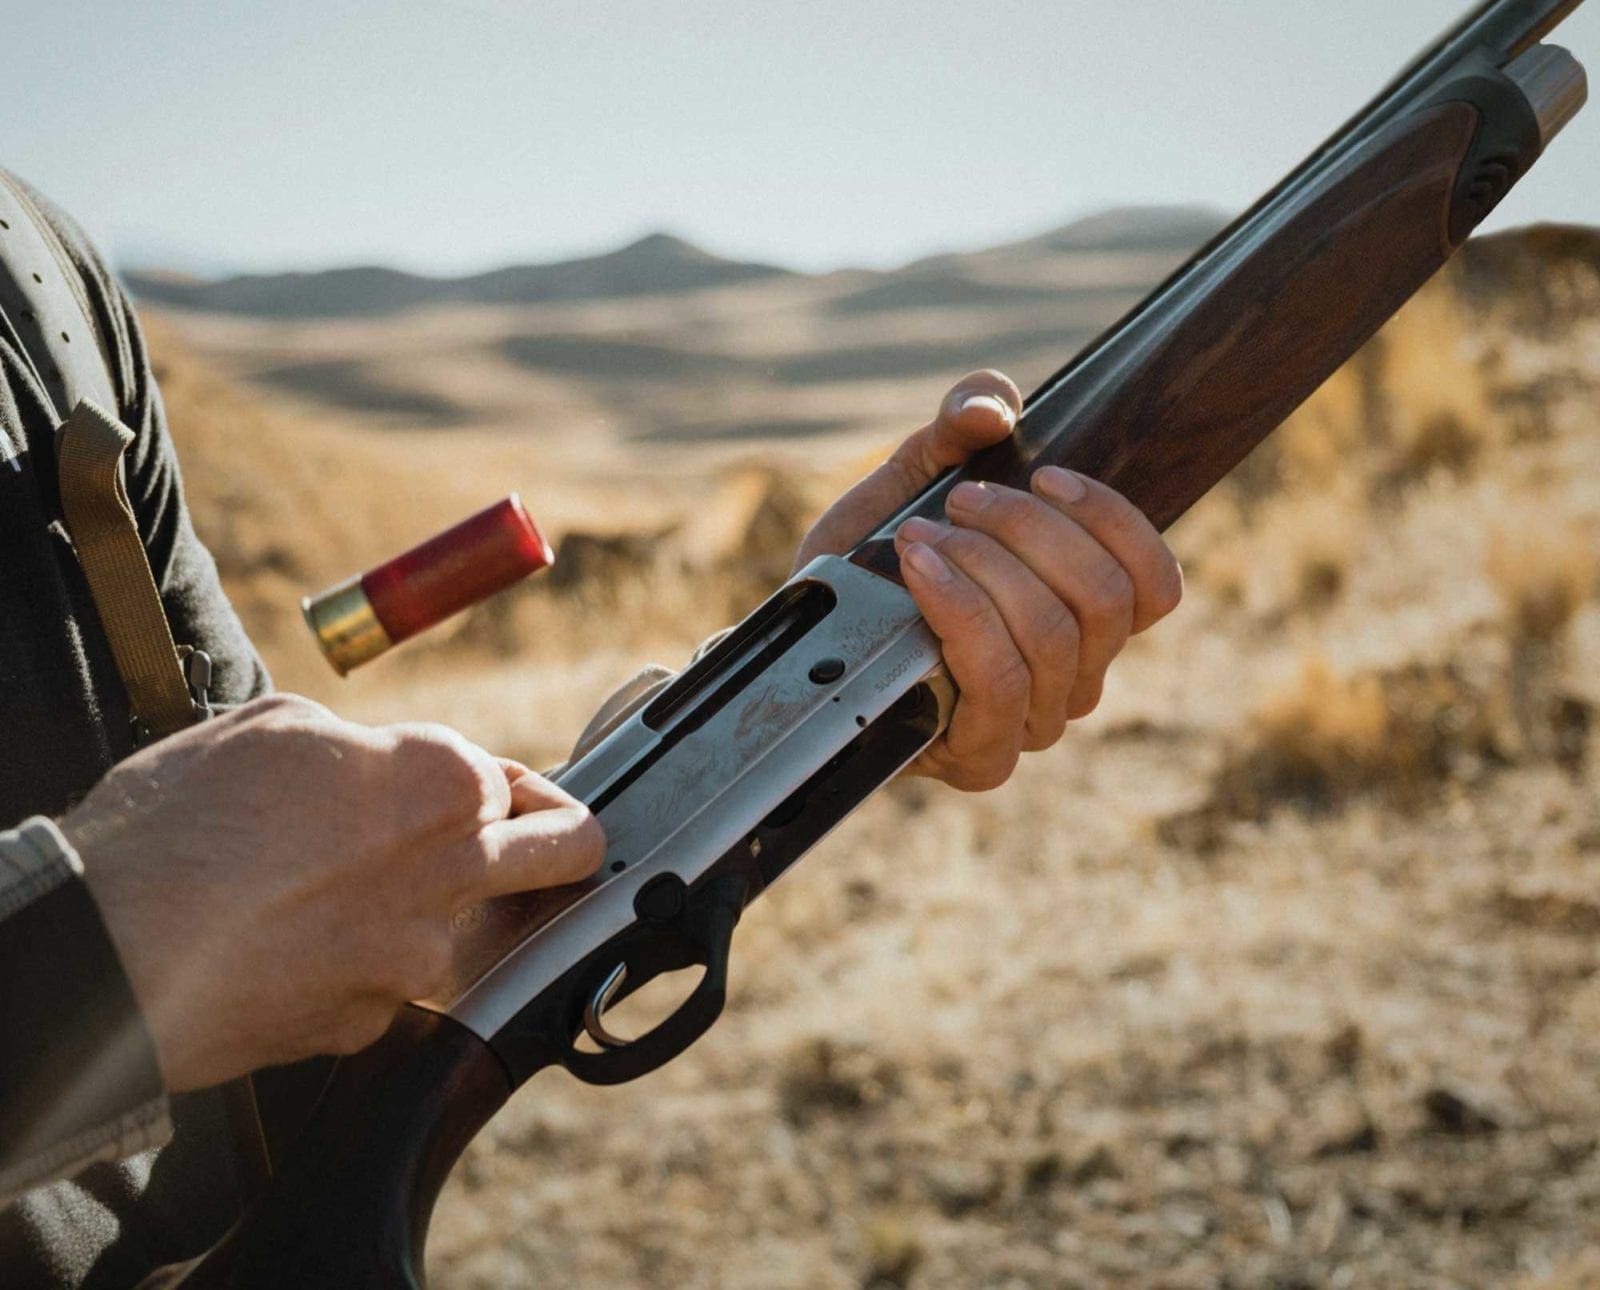 A Beretta A400 shotgun during a bird hunt.